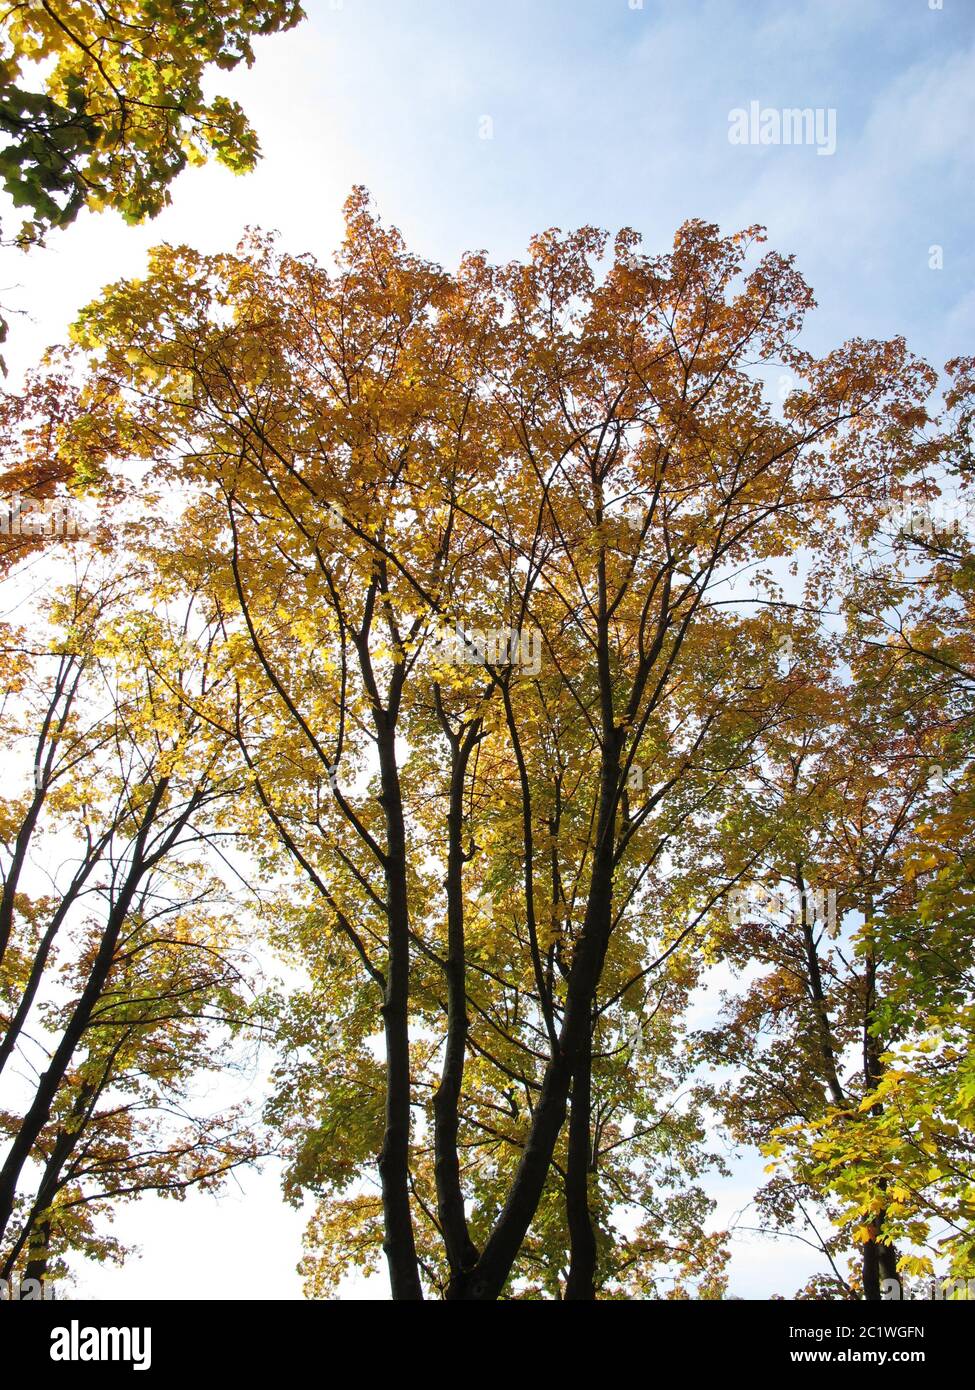 Árboles caducifolios con coloración típica de las hojas en otoño Foto de stock